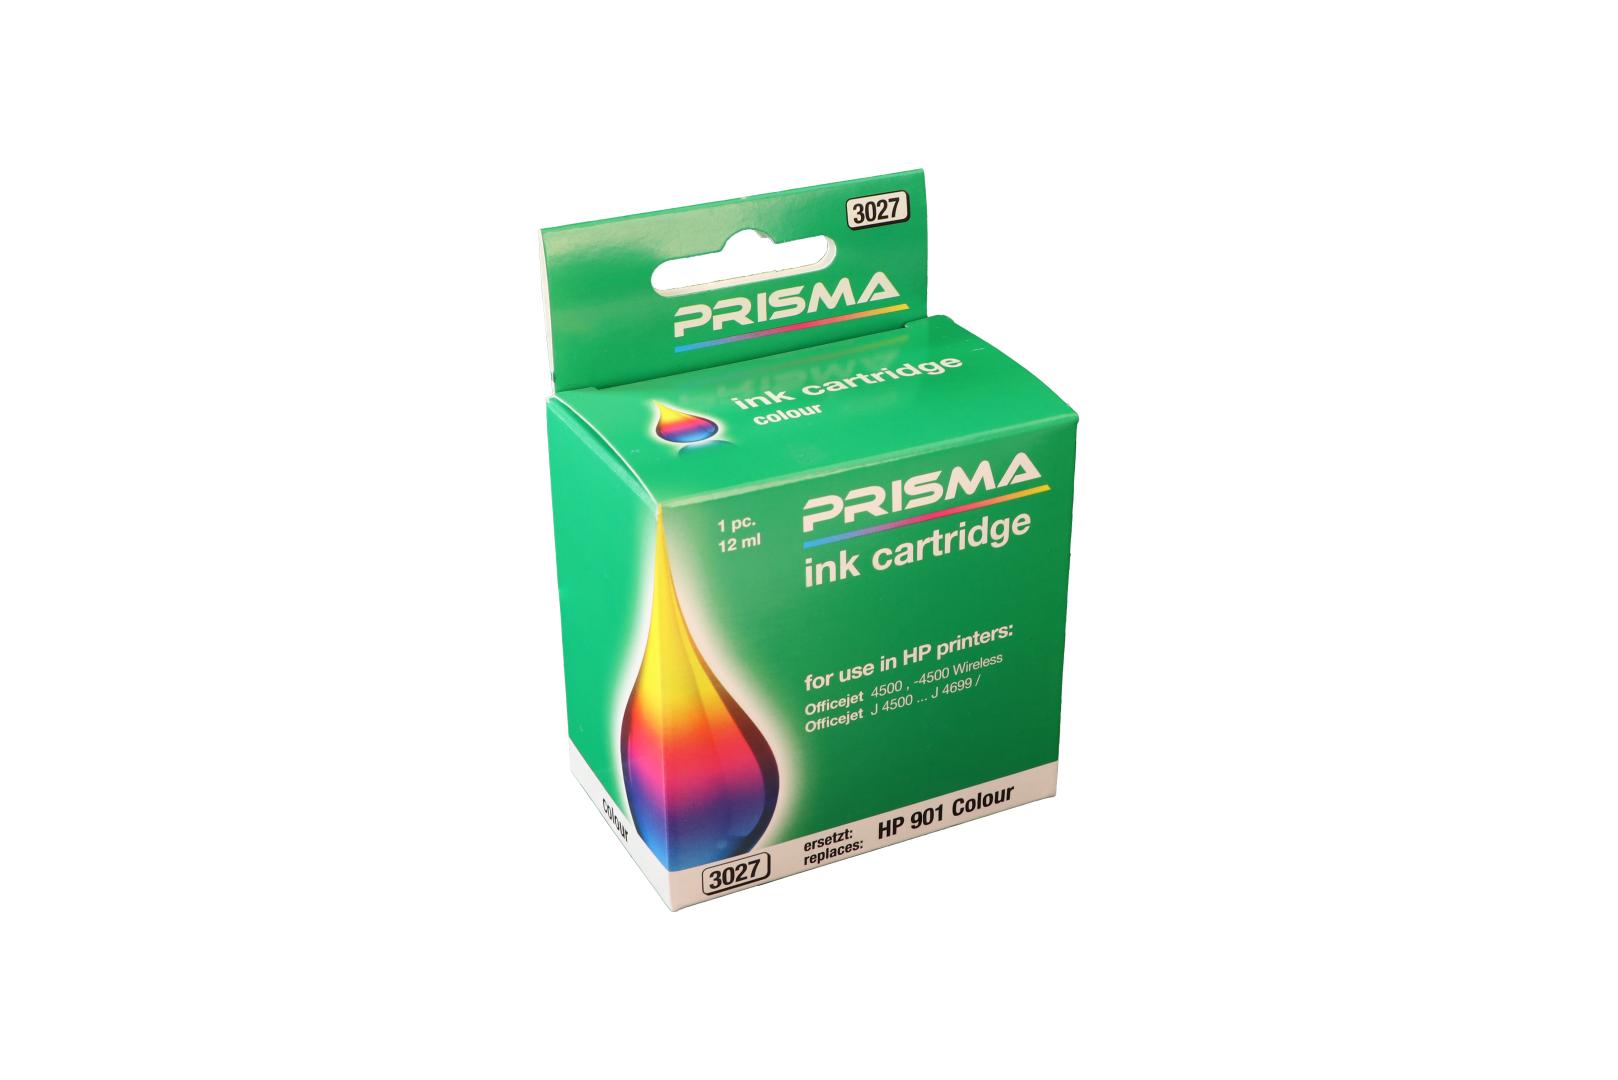 PRISMA 3027 Druckerpatrone für HP Tintenstrahldrucker, color, 12 ml